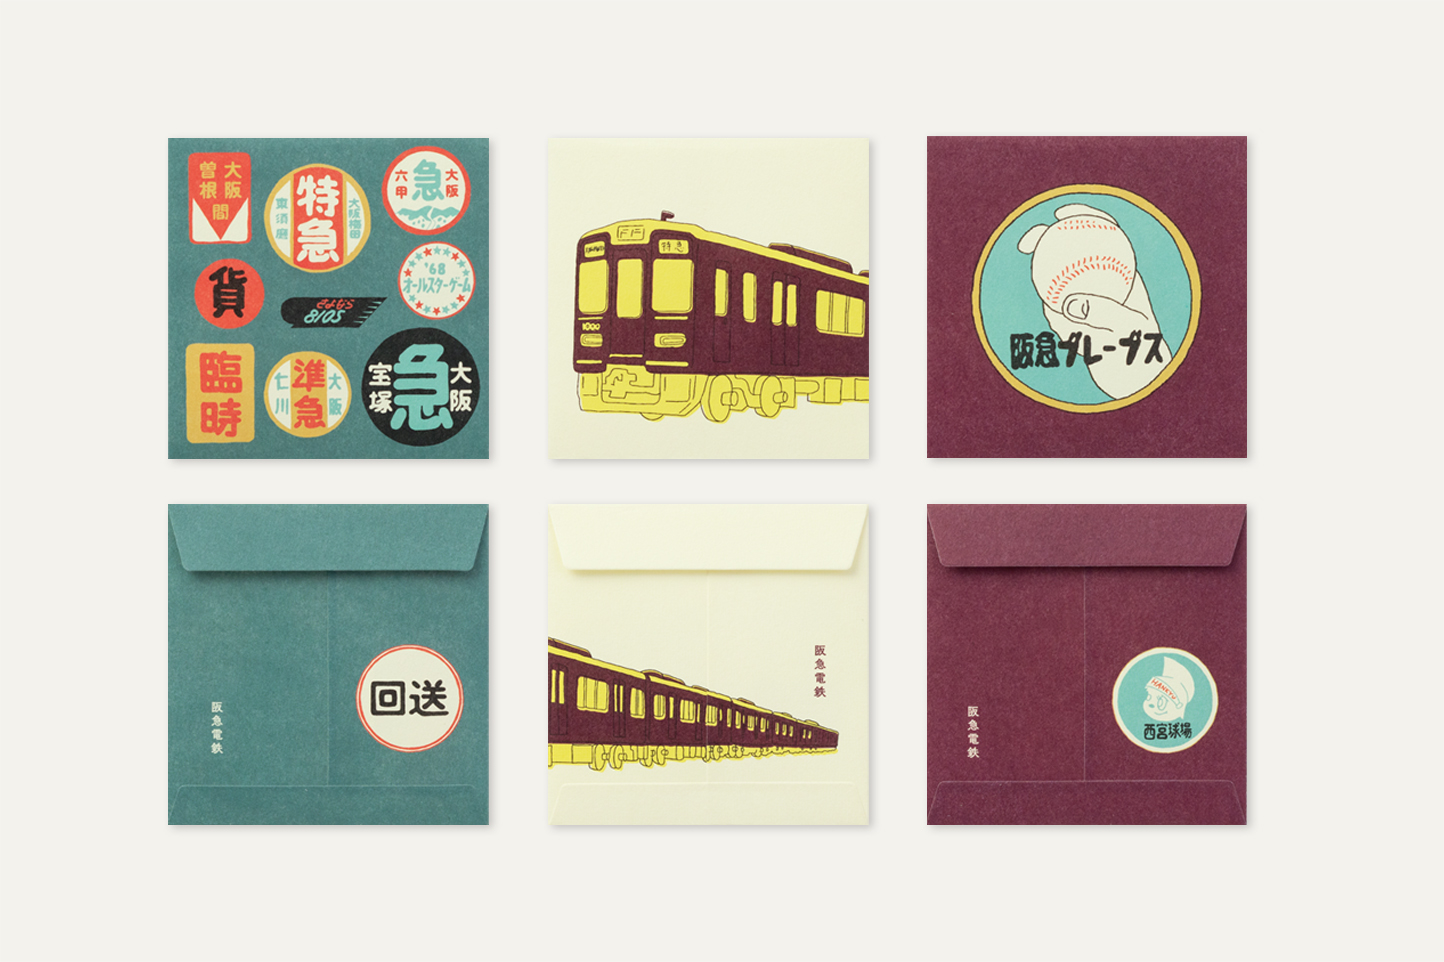 レトロでかわいい 阪急電鉄グッズのデザインができるまで デザインフィル コマーシャルデザイン事業部